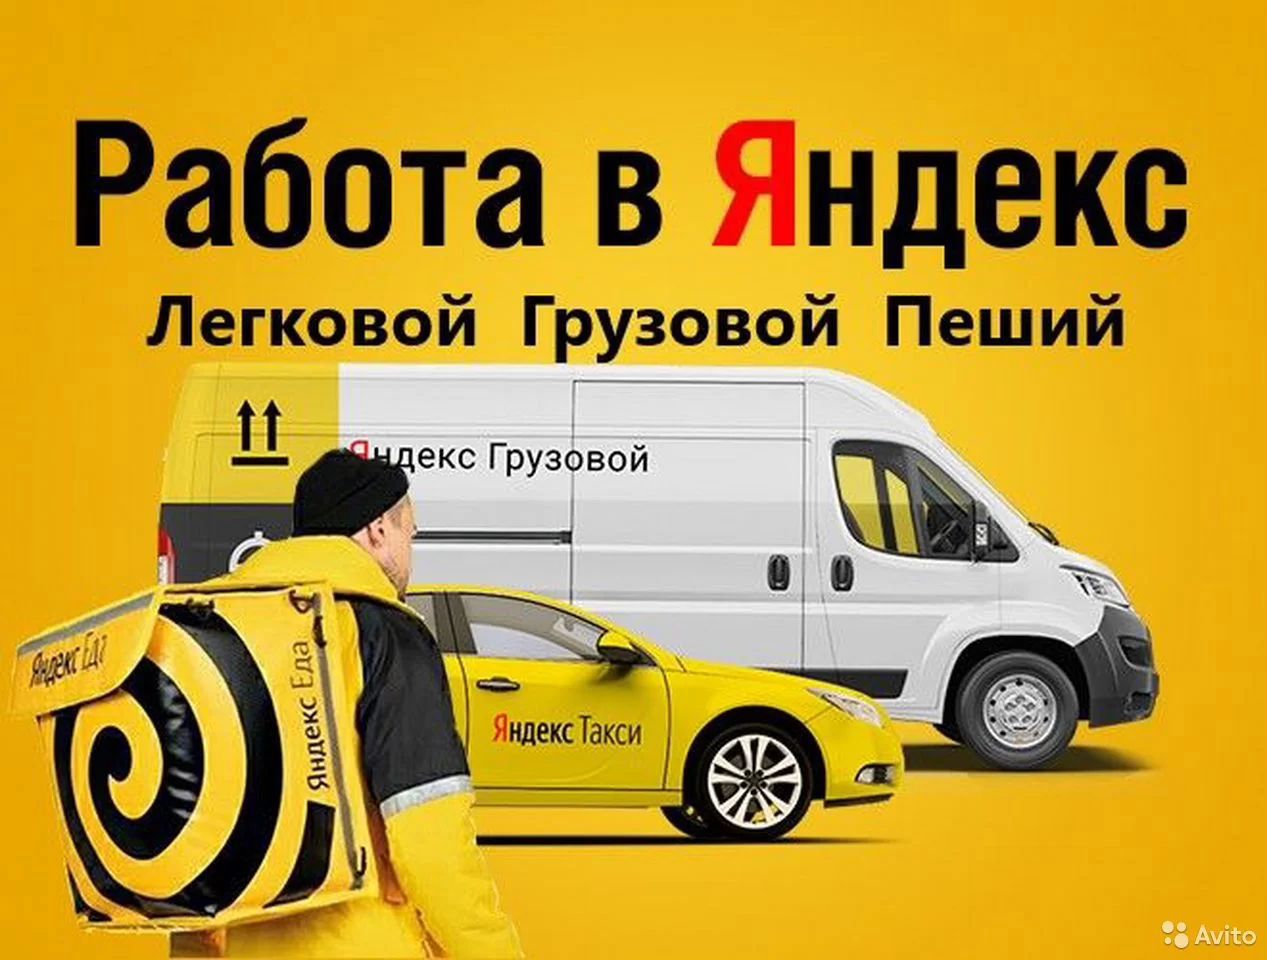 Работа такси отзывы водителей москва. Такси доставка.